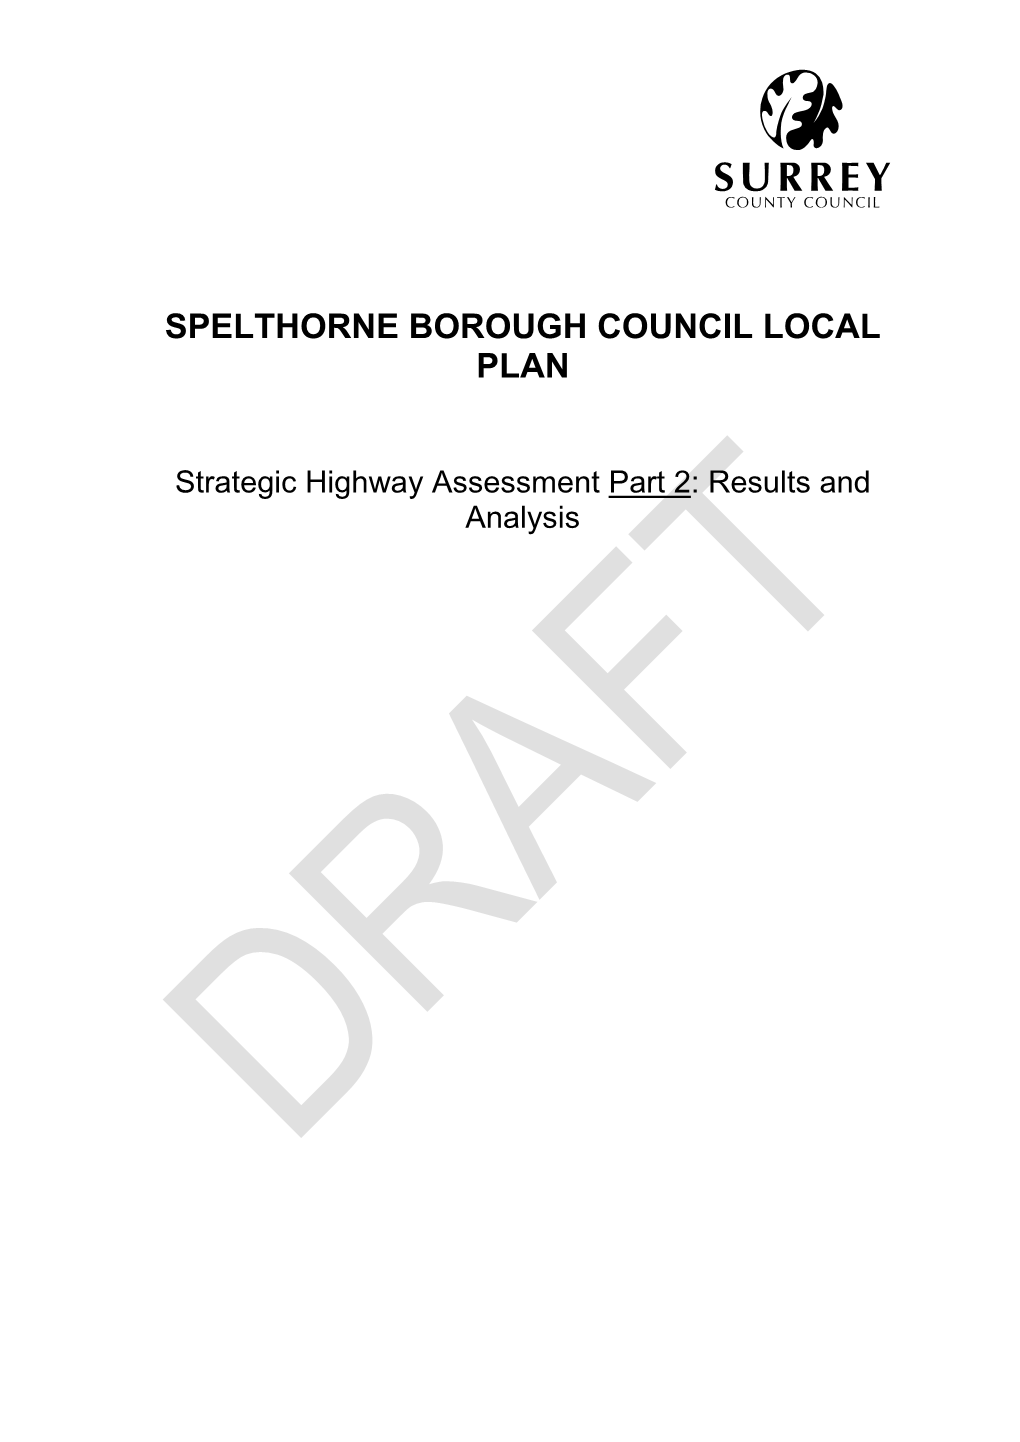 Draft Strategic Highways Assessment